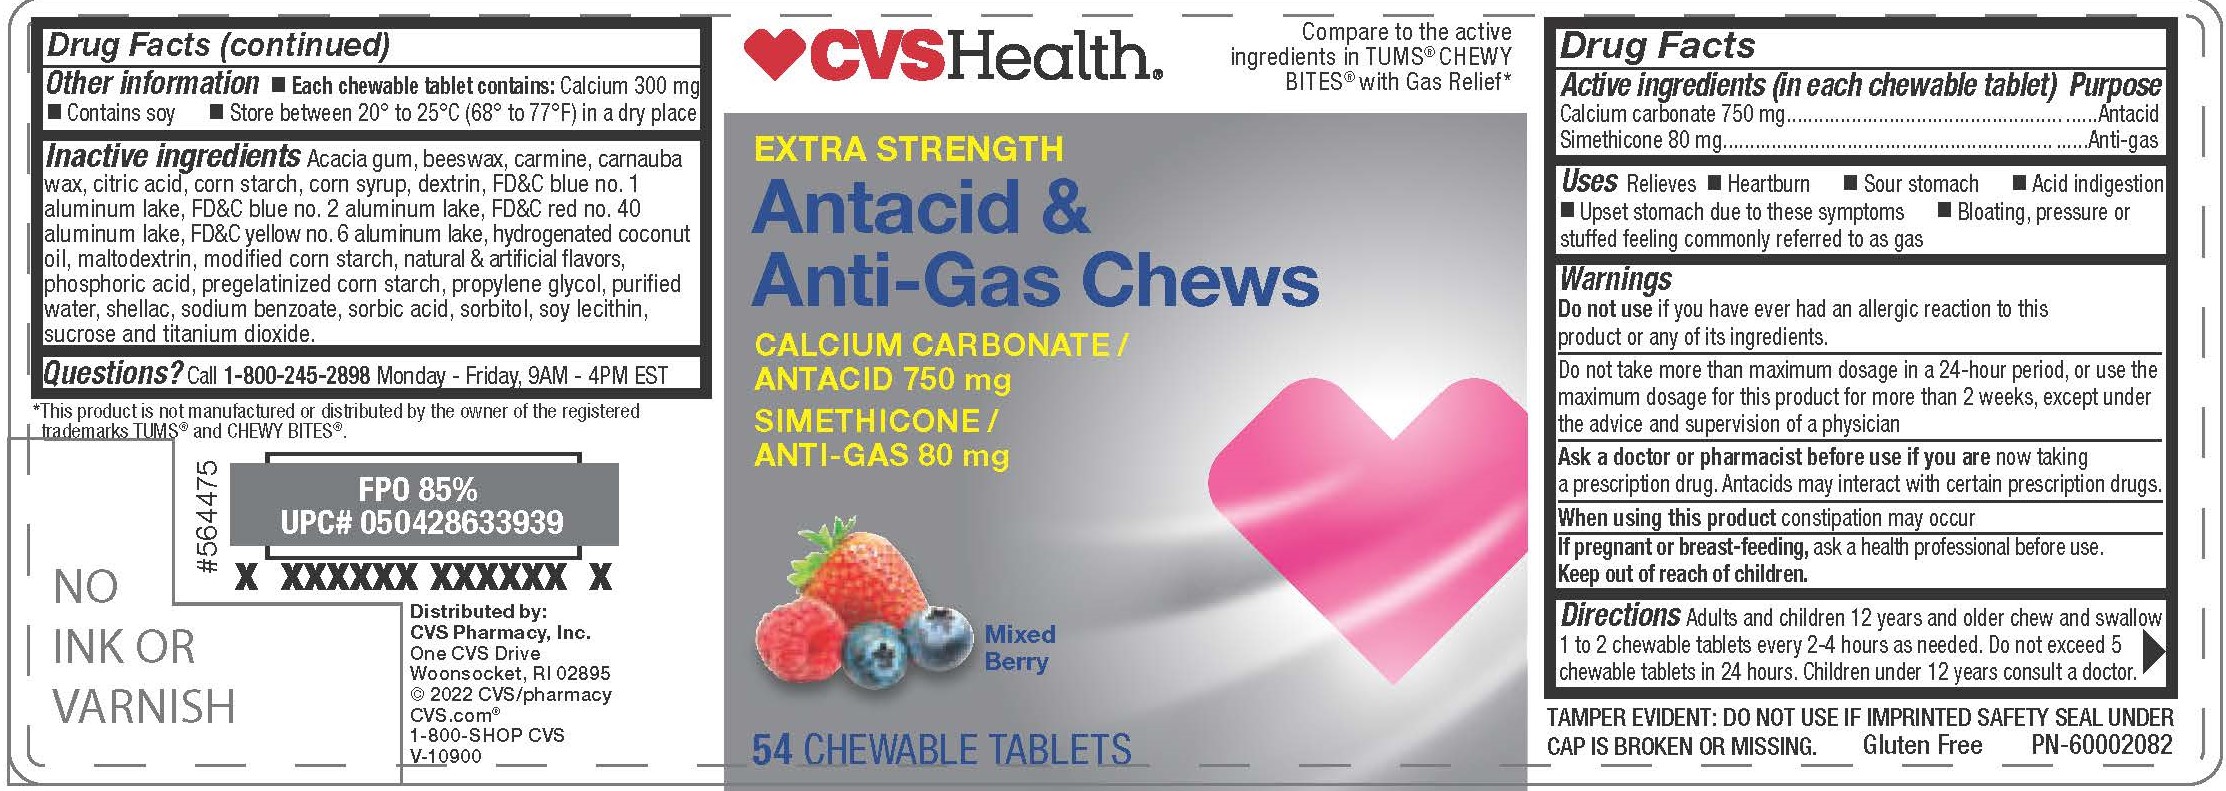 CVS Mixed Berry Antacid HBG 54ct